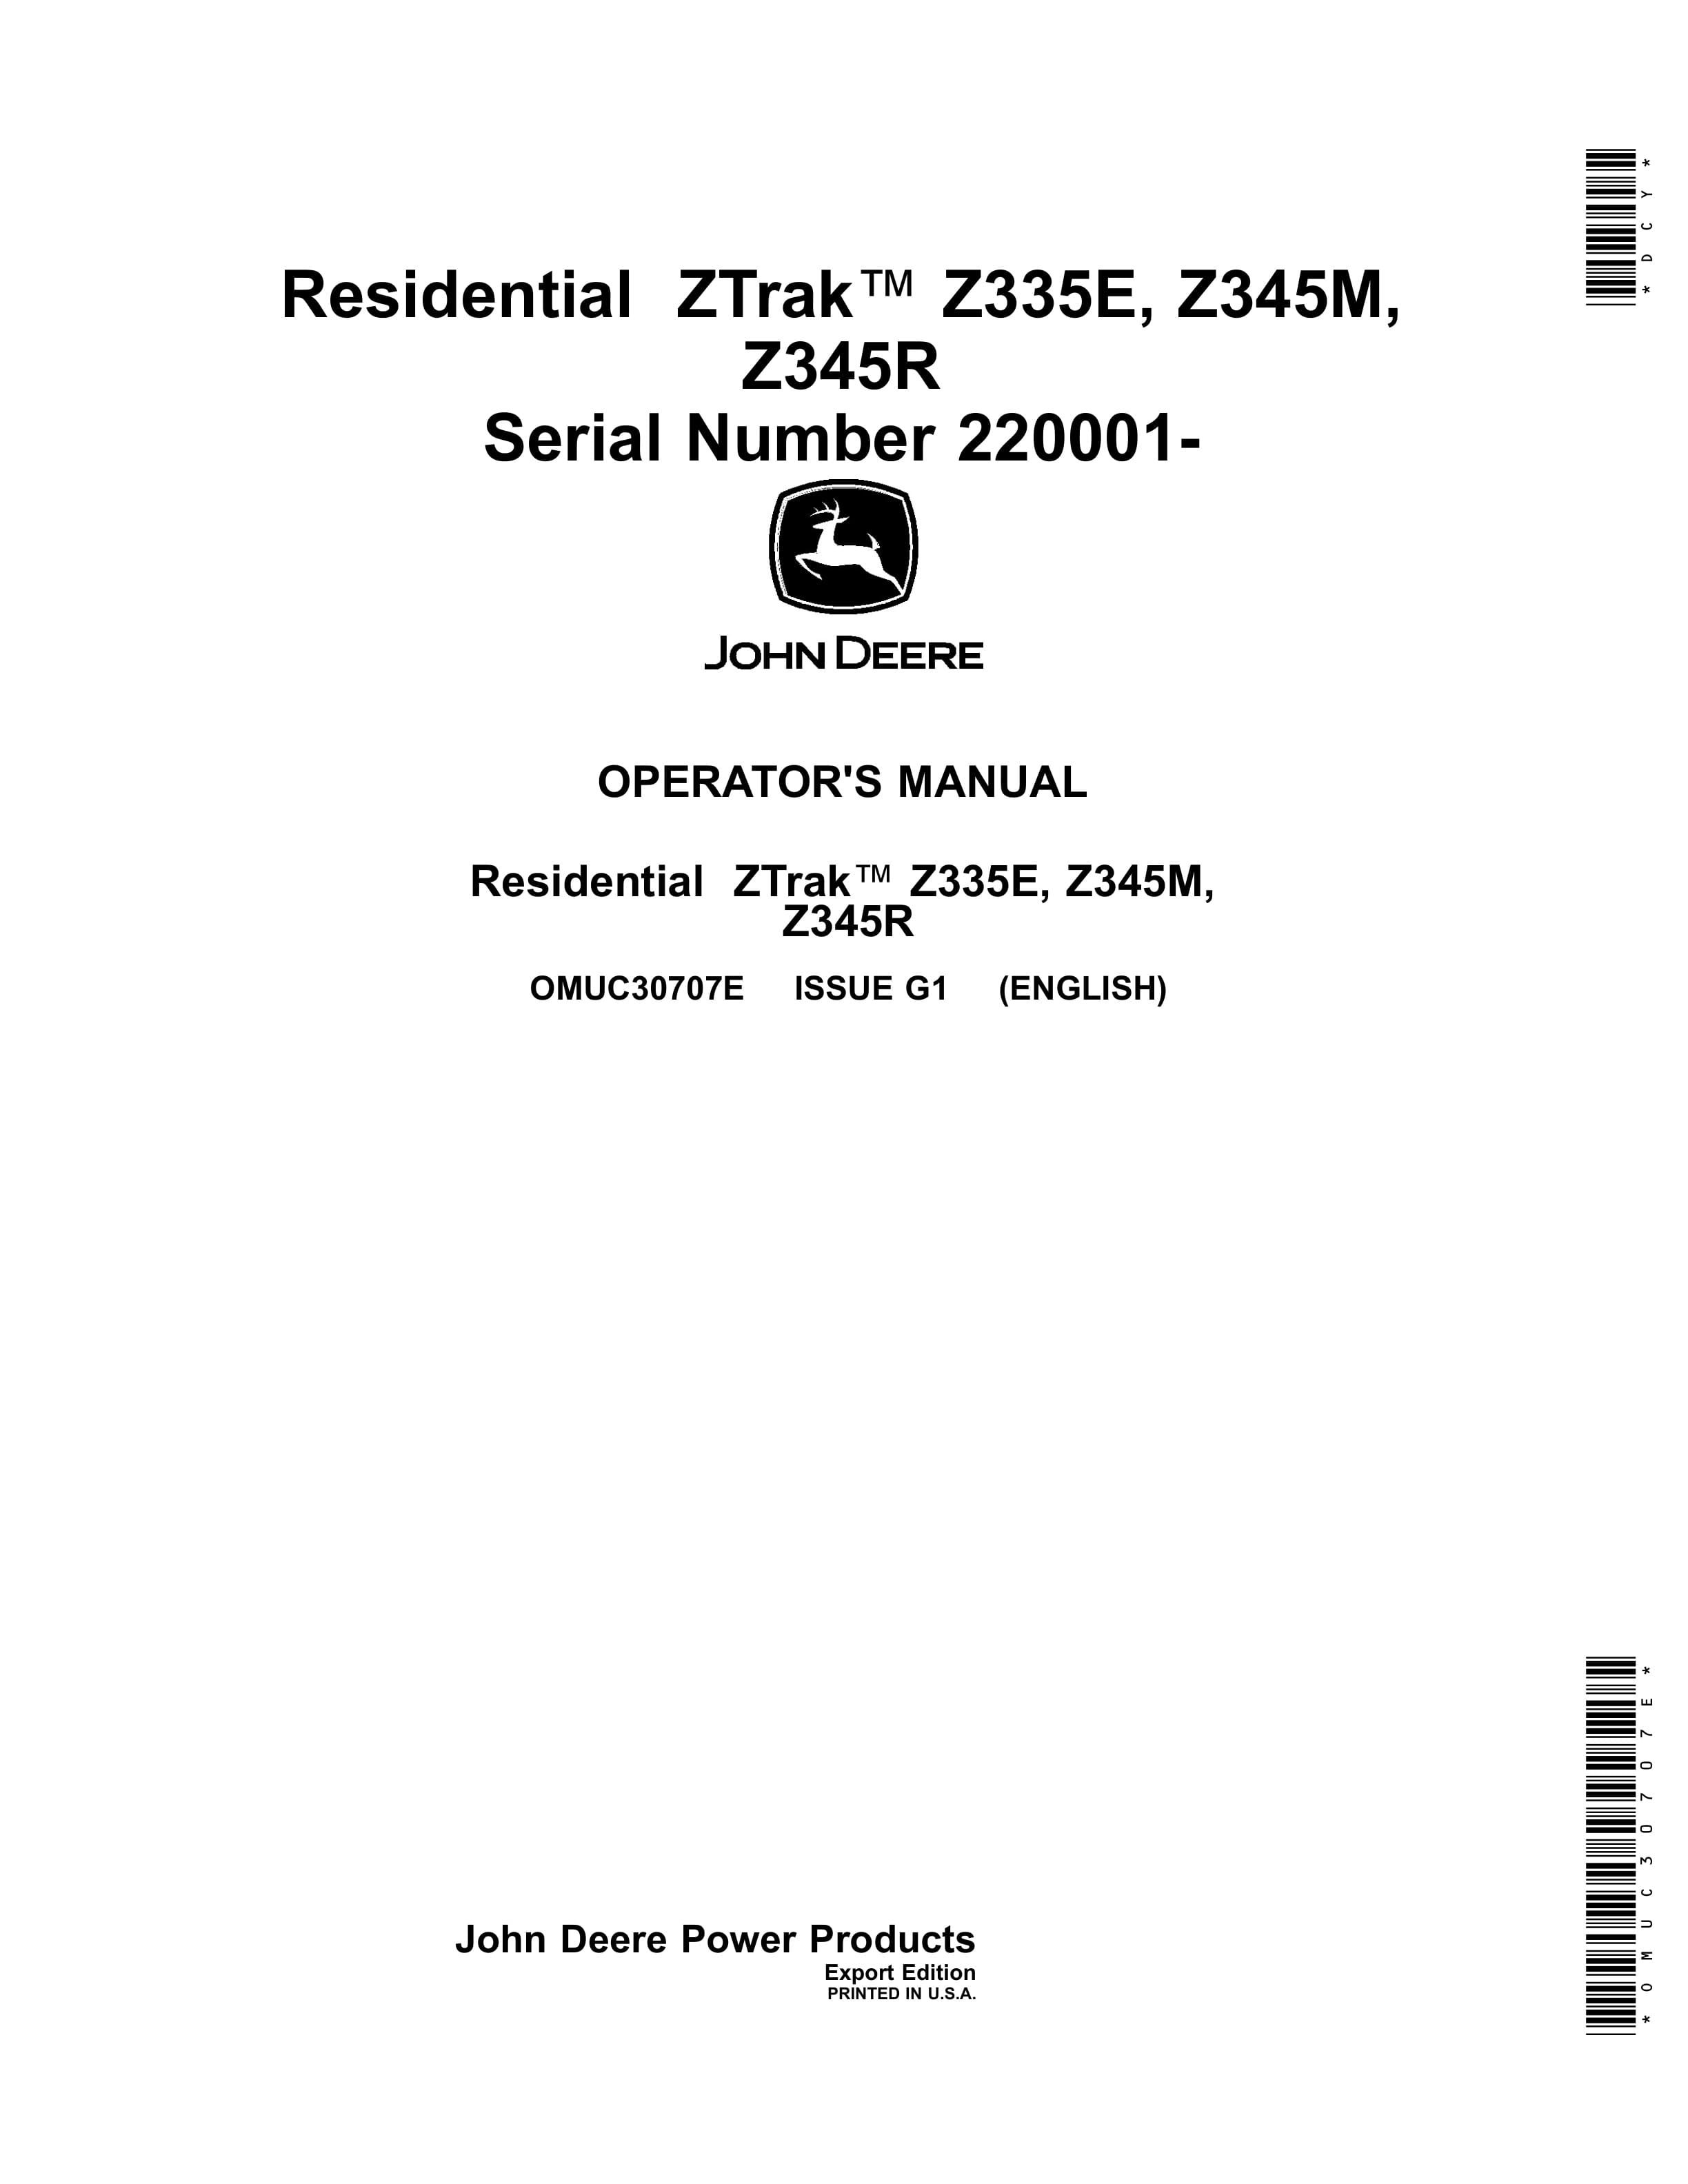 John Deere Z335E Z345M Z345R Residential ZTrak Serial Number 220001 Operator Manual OMUC30707E 1